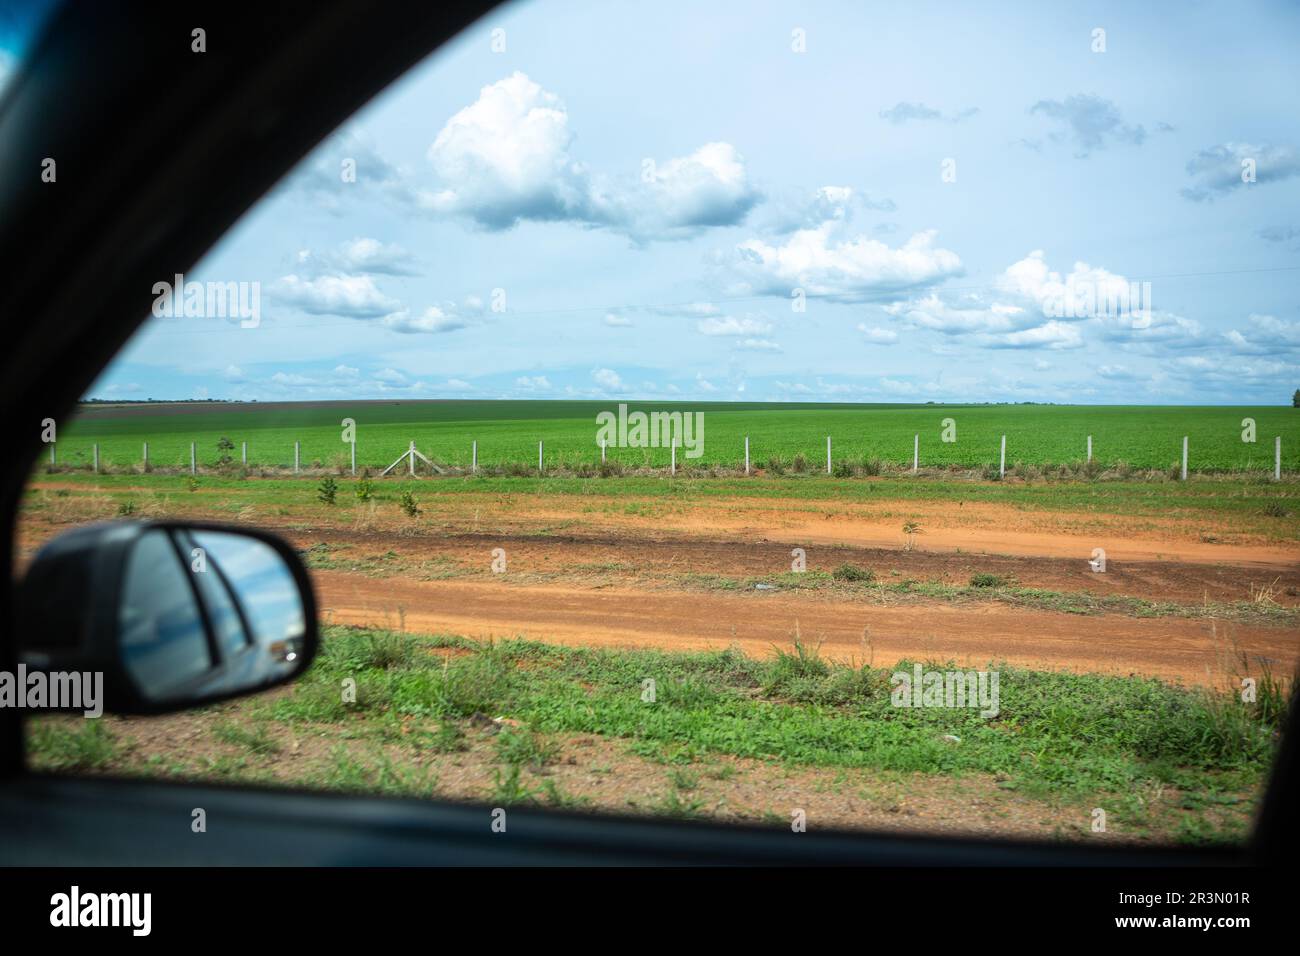 Belle vue de l'agriculture de soja par la fenêtre de voiture sur la route BR-163, Mato Grosso, Brésil. Concept d'agriculture, de voyage, de conduite, de transport. Banque D'Images